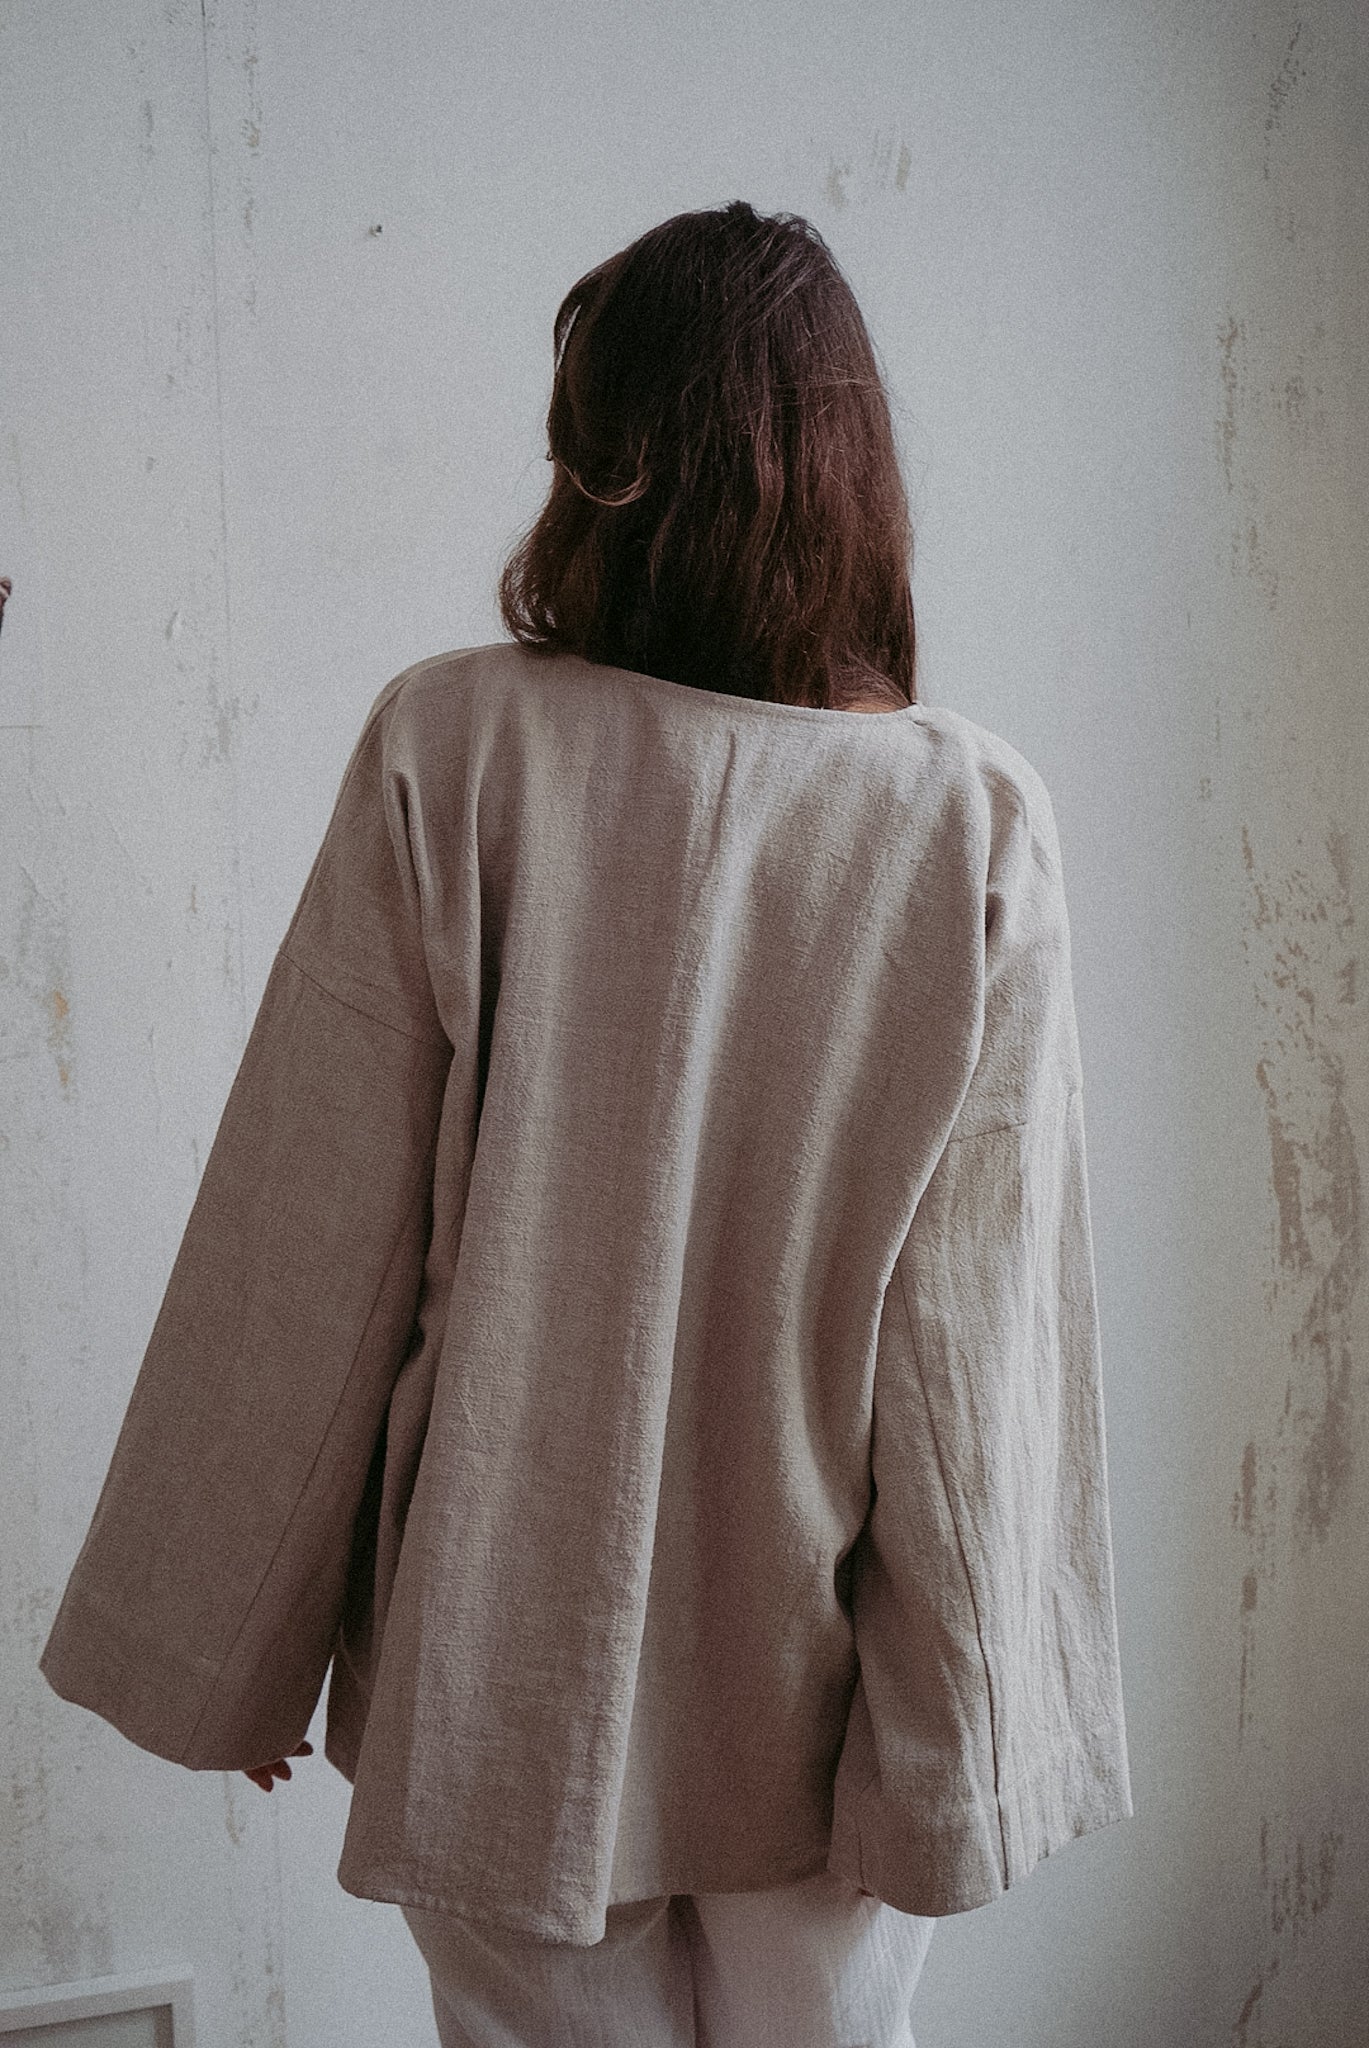 Nettle robe “Krekls”